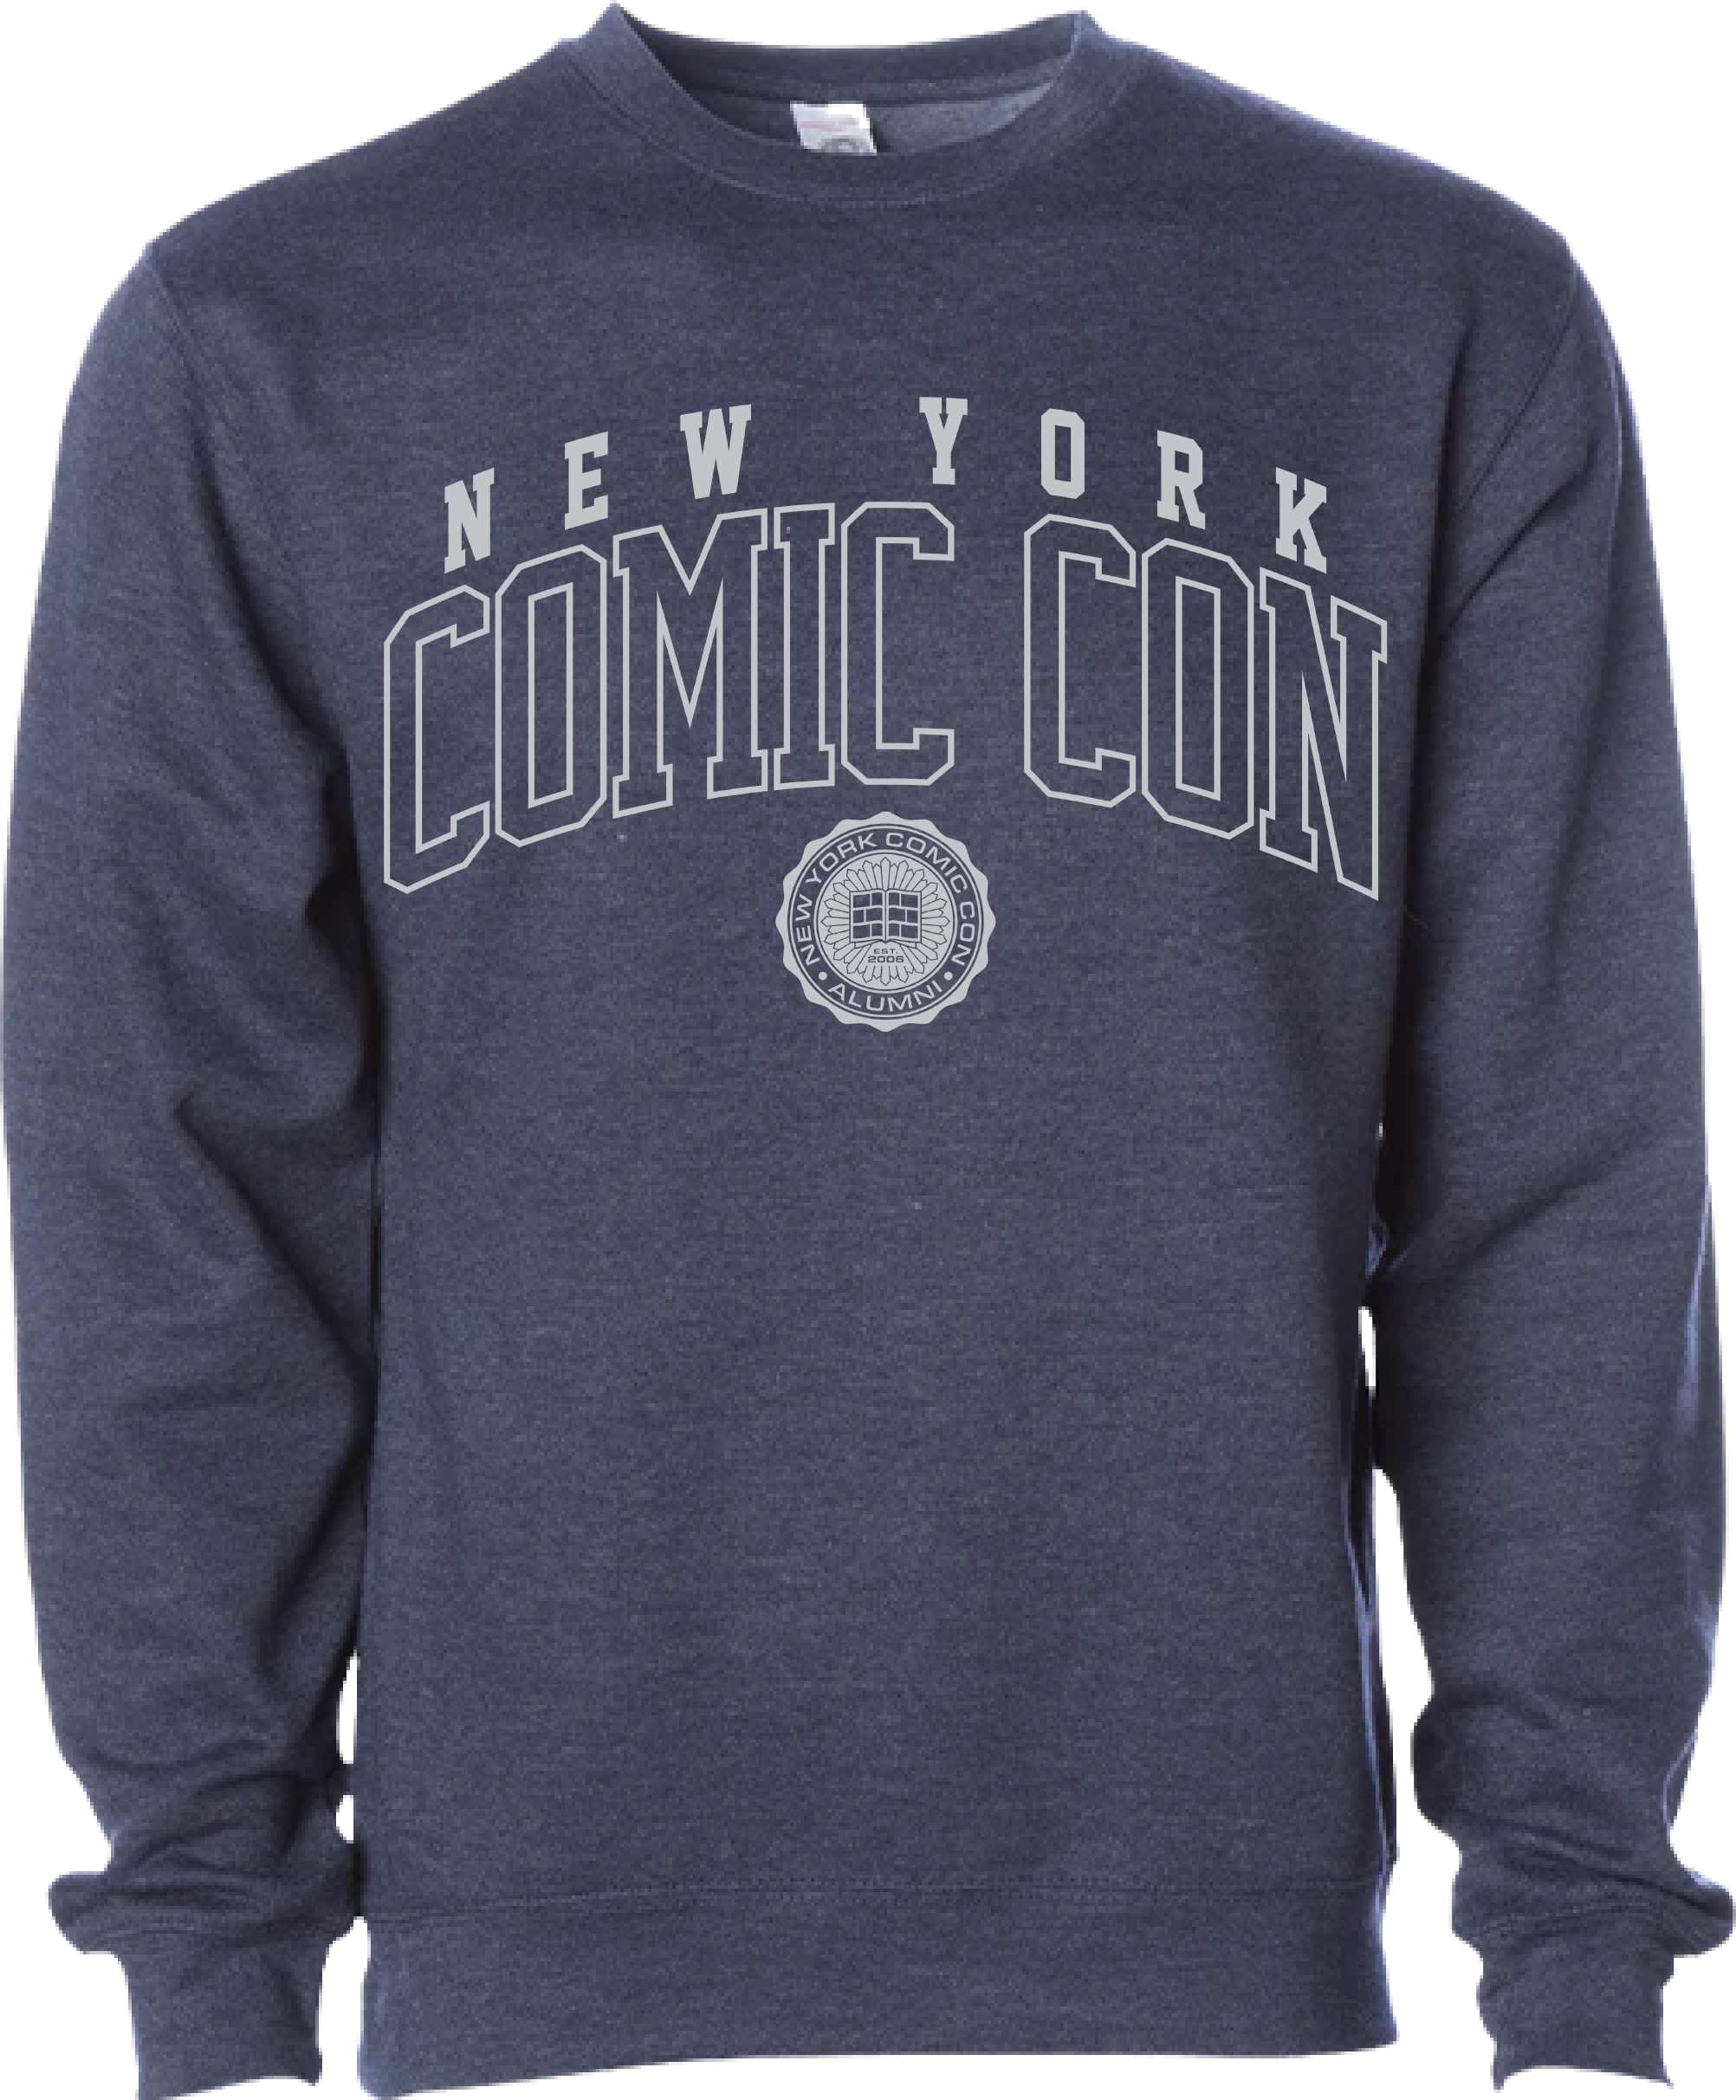 New York Comic Con 2022 exclusive merchandise